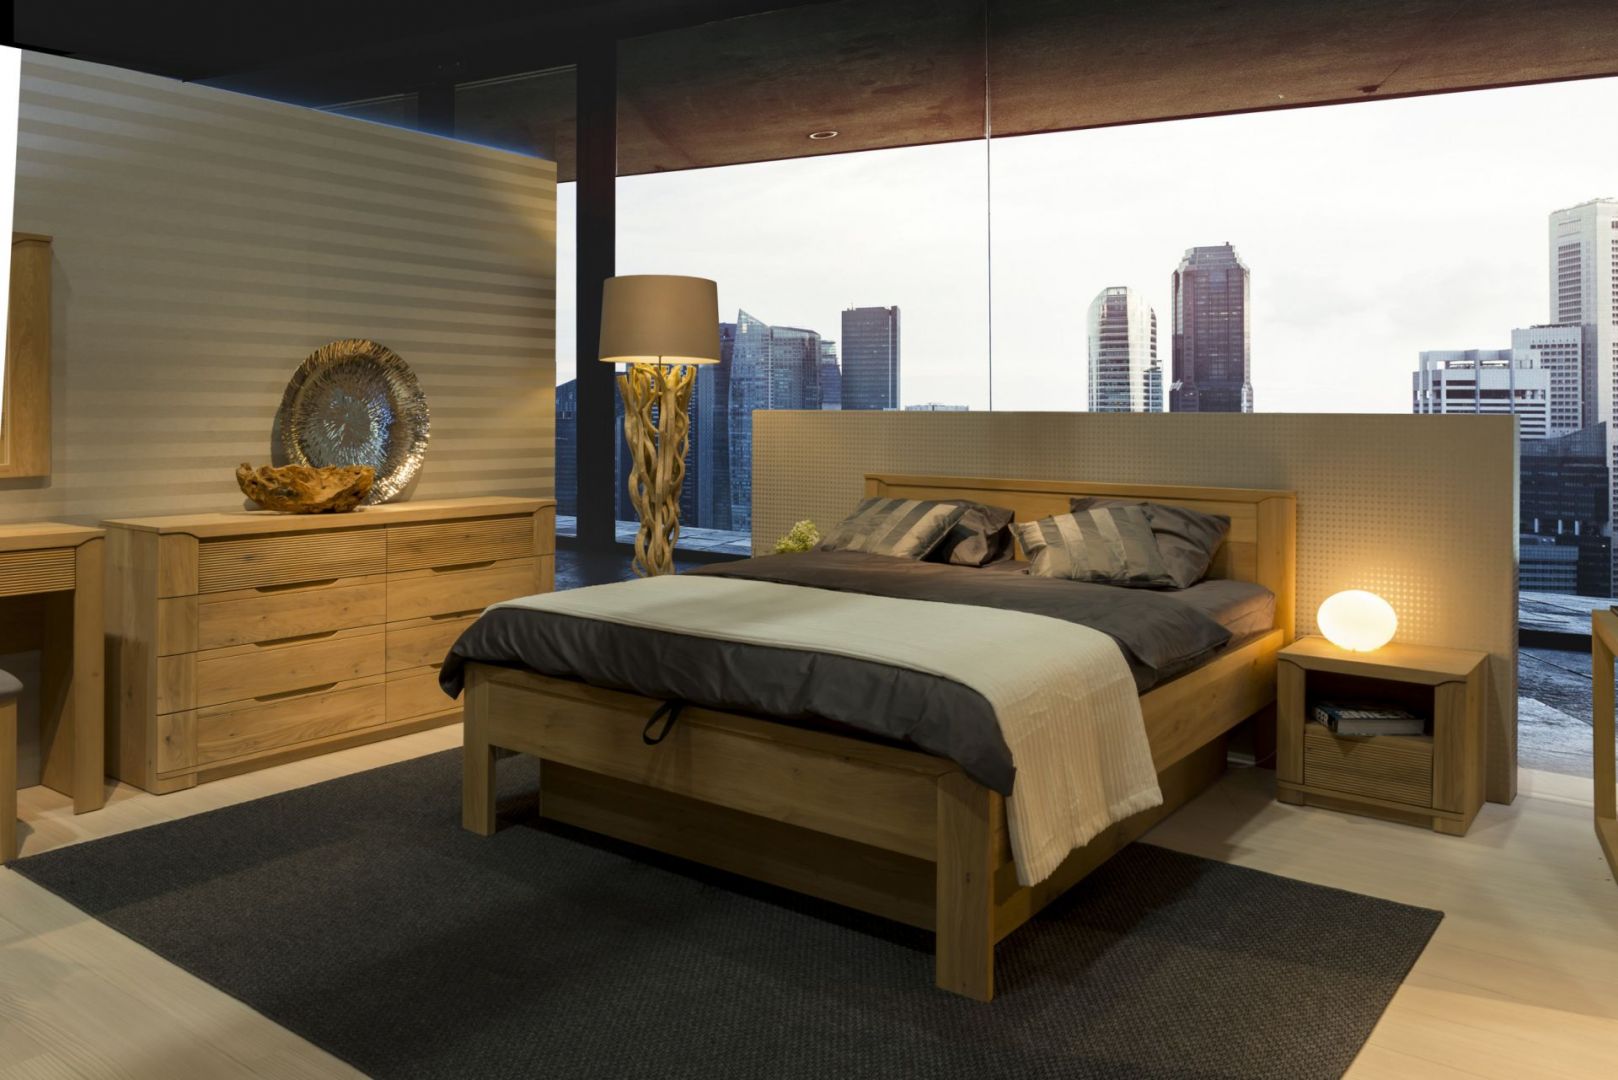 Meble do sypialni Oleo wprowadzają ciepły nastrój, dzięki szczotkowanym powierzchniom, które uwydatniają piękno naturalnego drewna. Fot. Klose